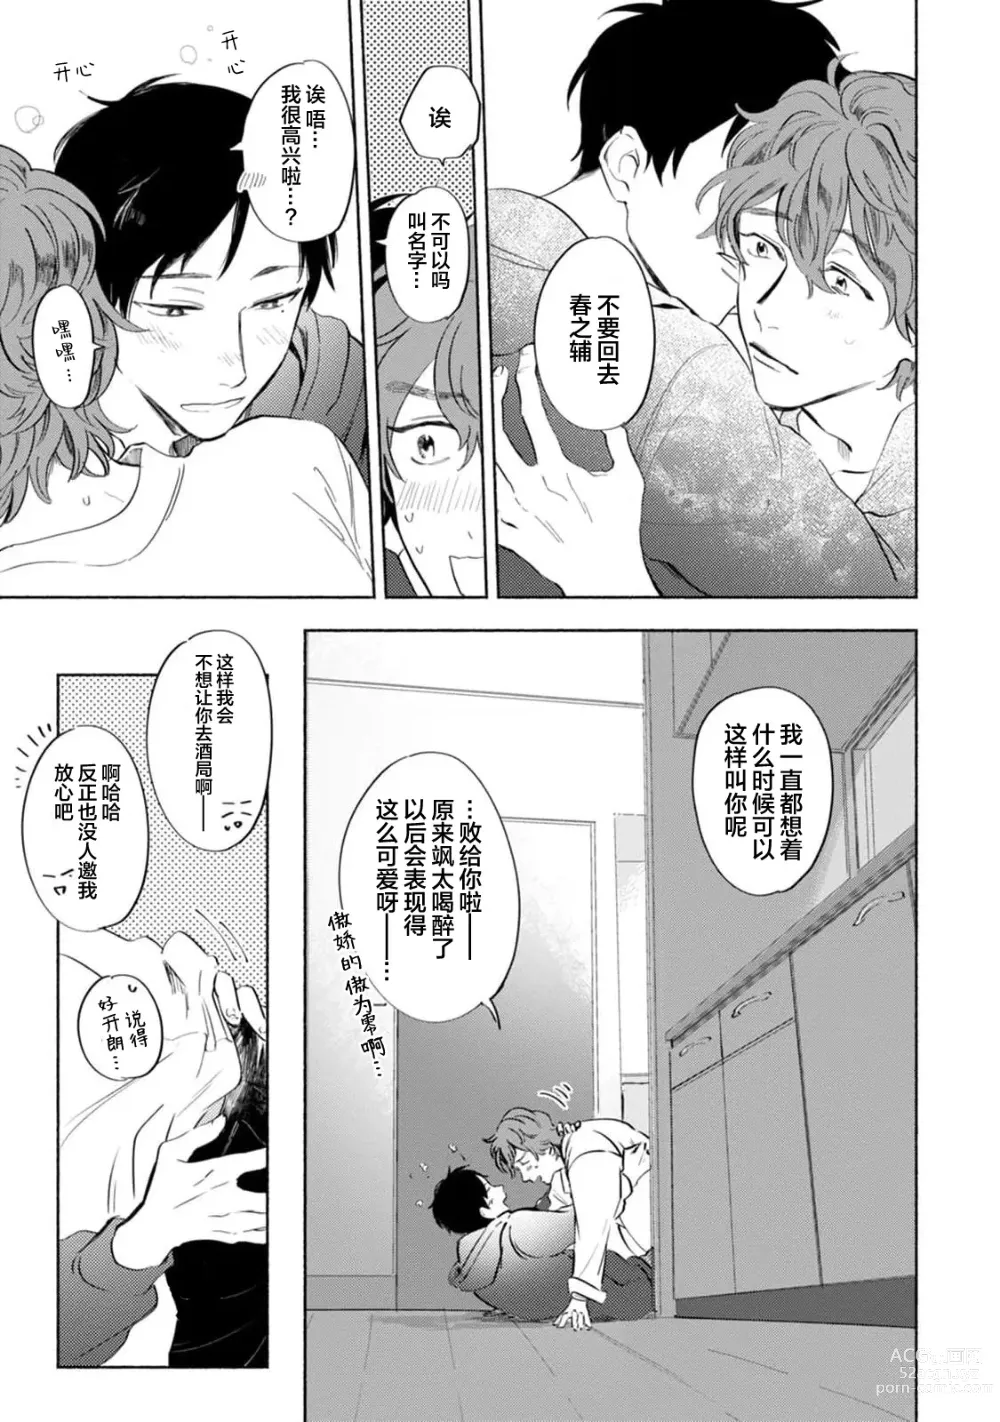 Page 207 of manga 与春为邻